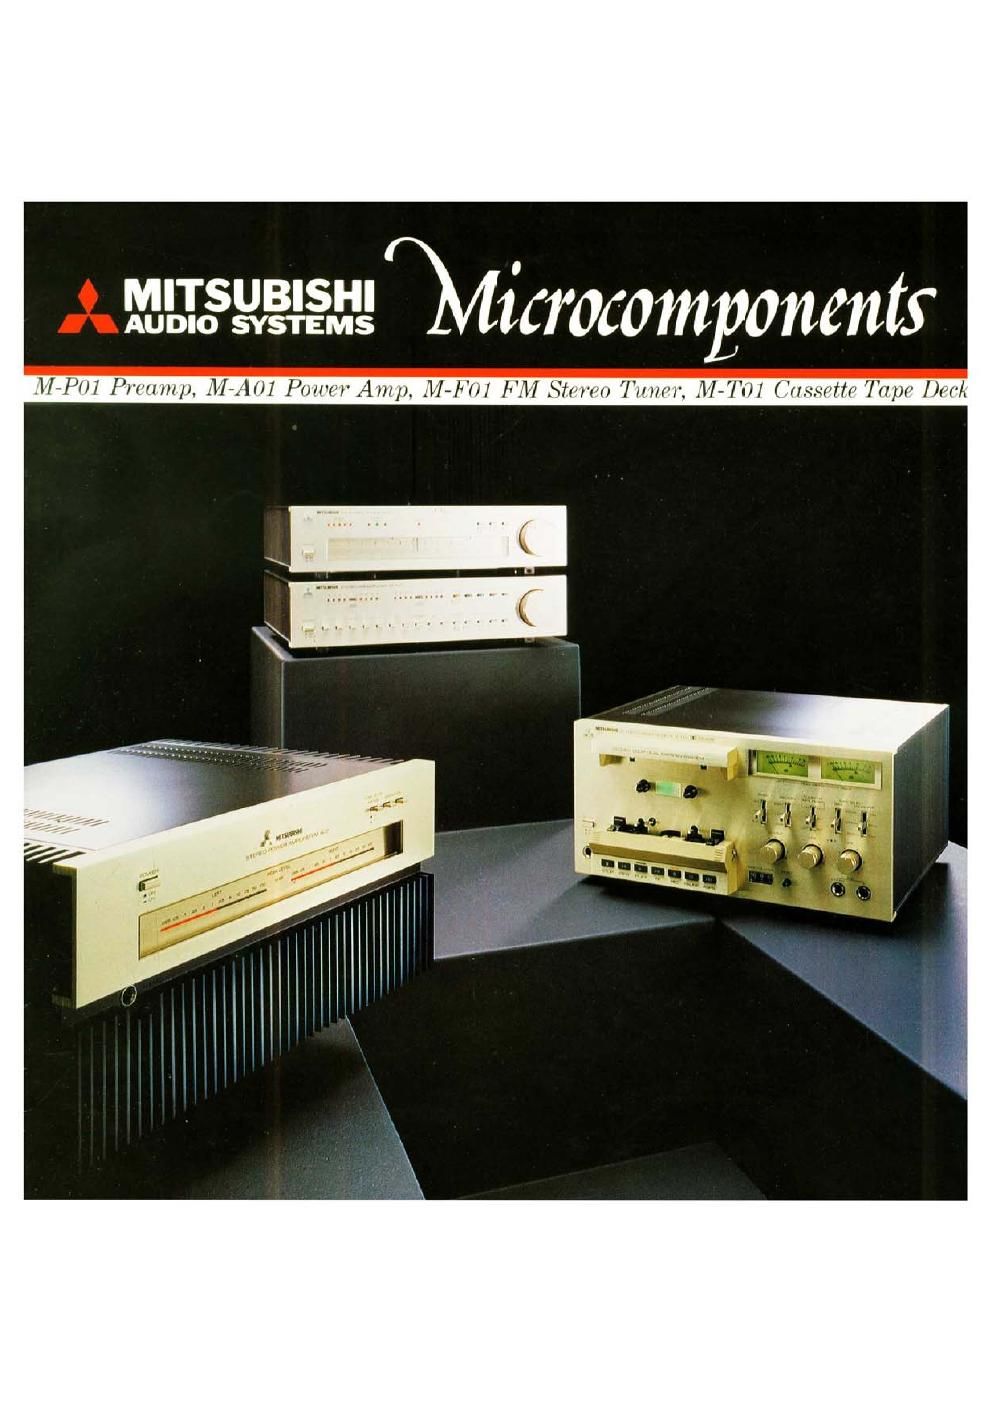 mitsubishi catalog microcomponents 1980